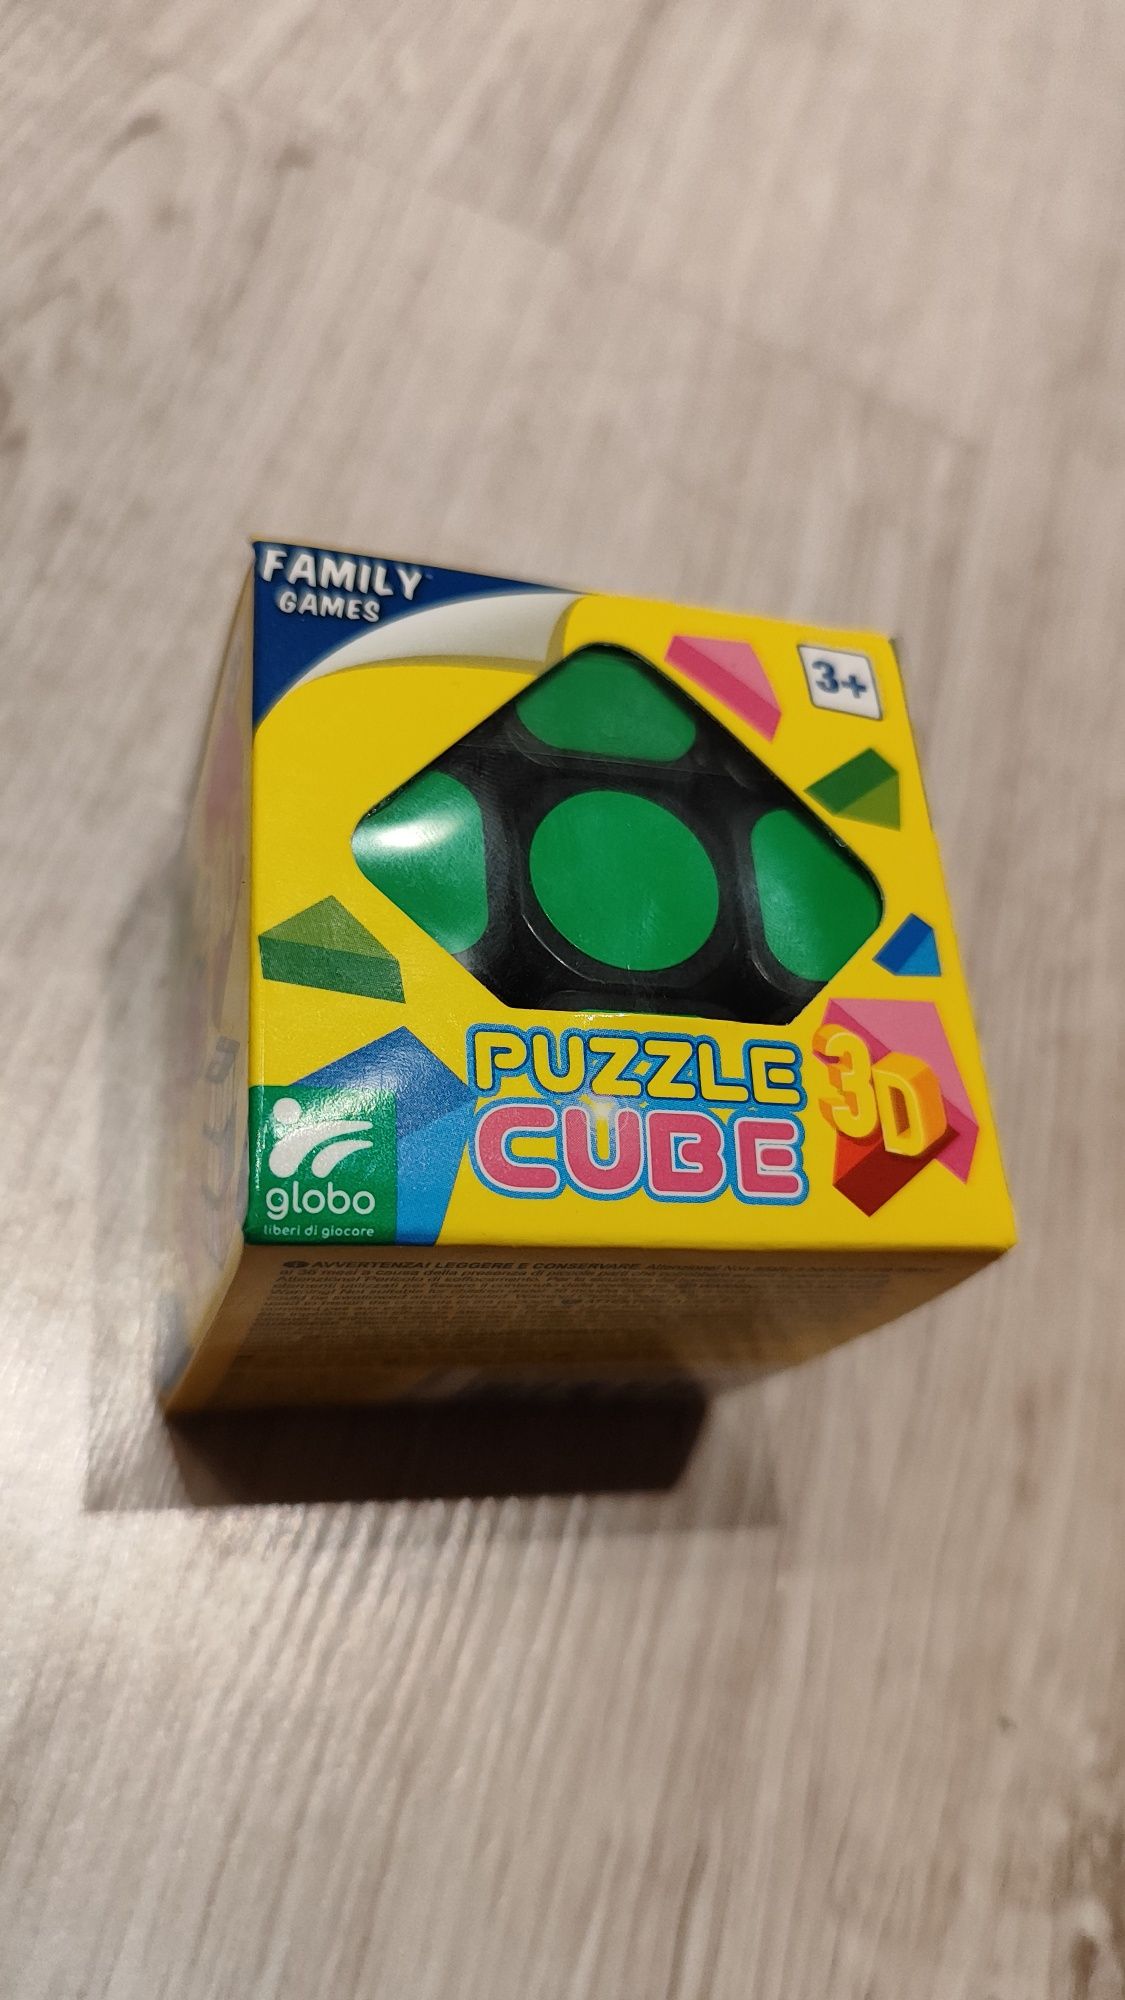 Kostka Rubika. Nowa. Zapakowana. Puzzle Cube 3x3